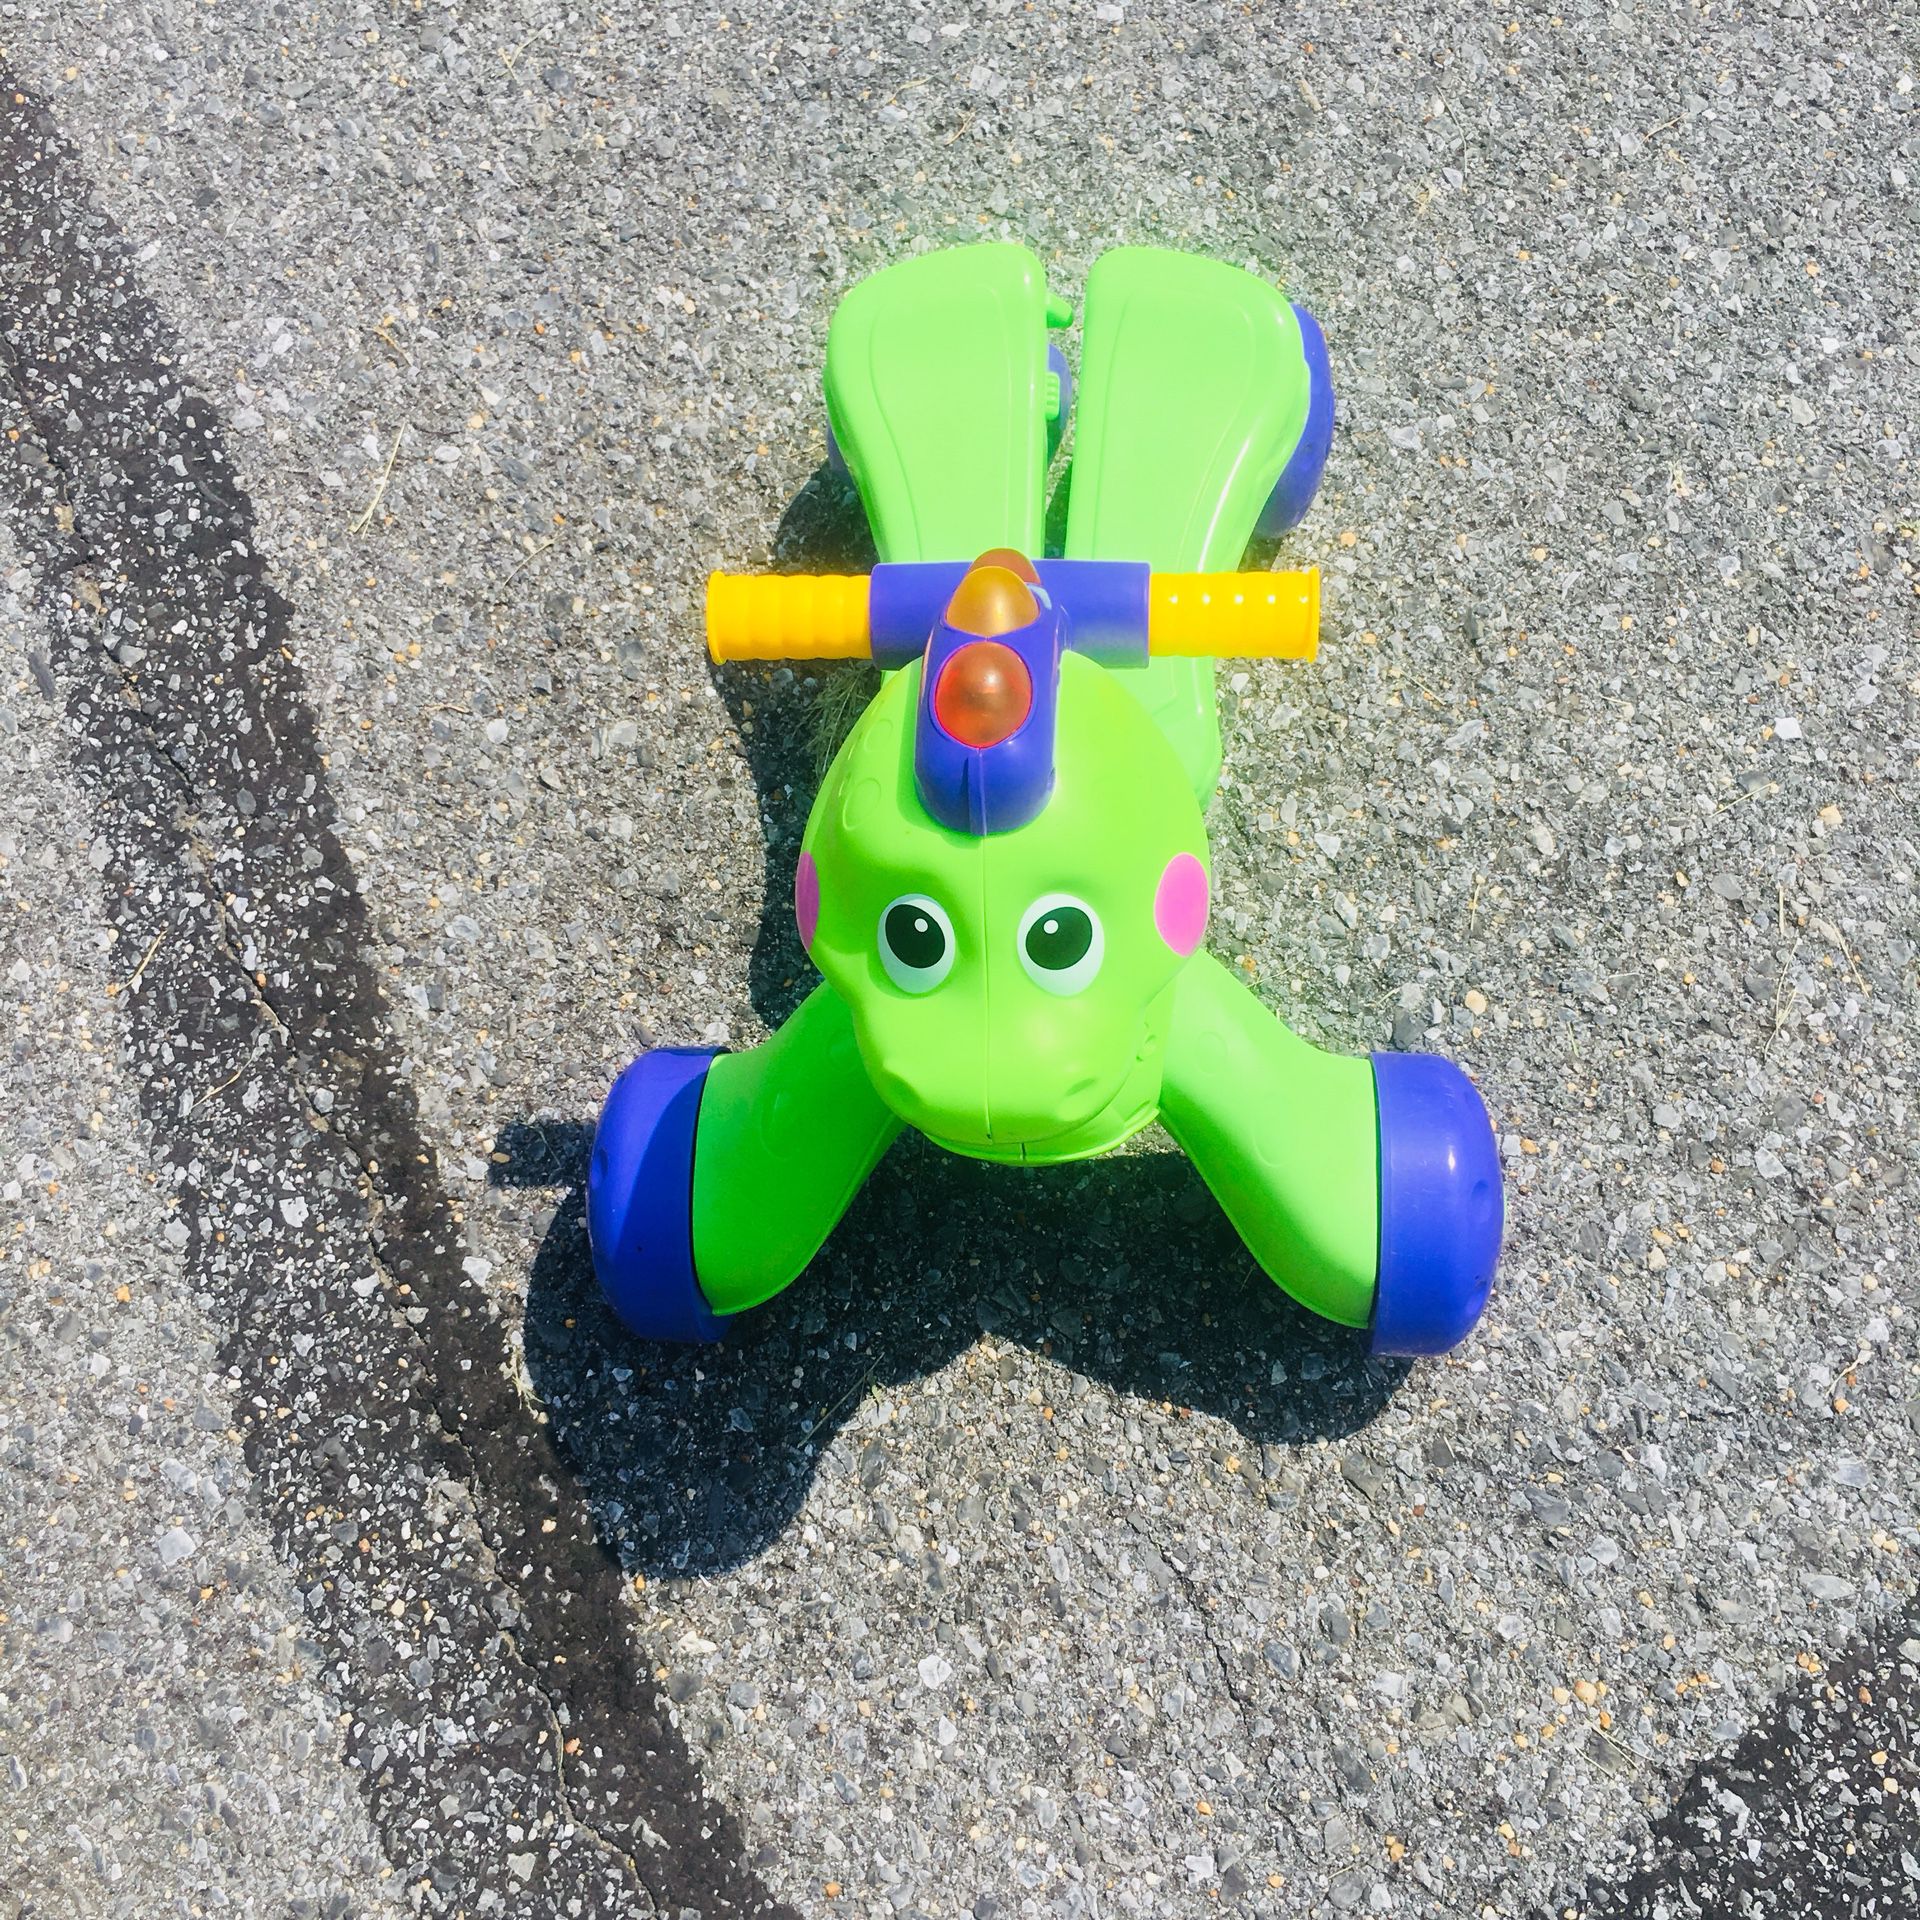 Toddler’s toy